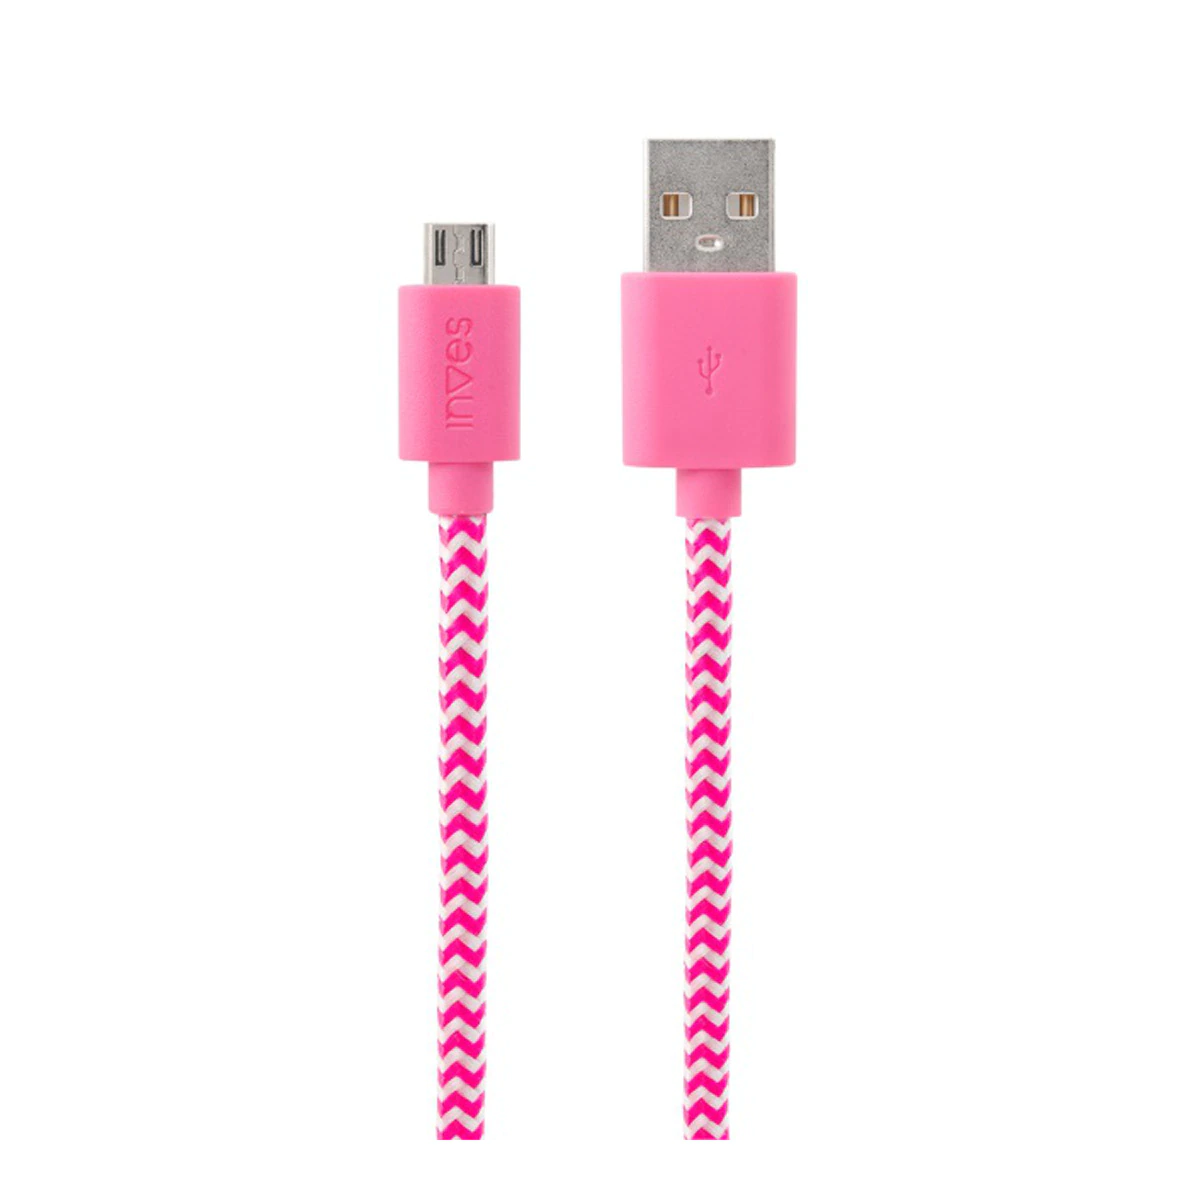 Cable Inves B4 de USB a Micro USB de 1 metro